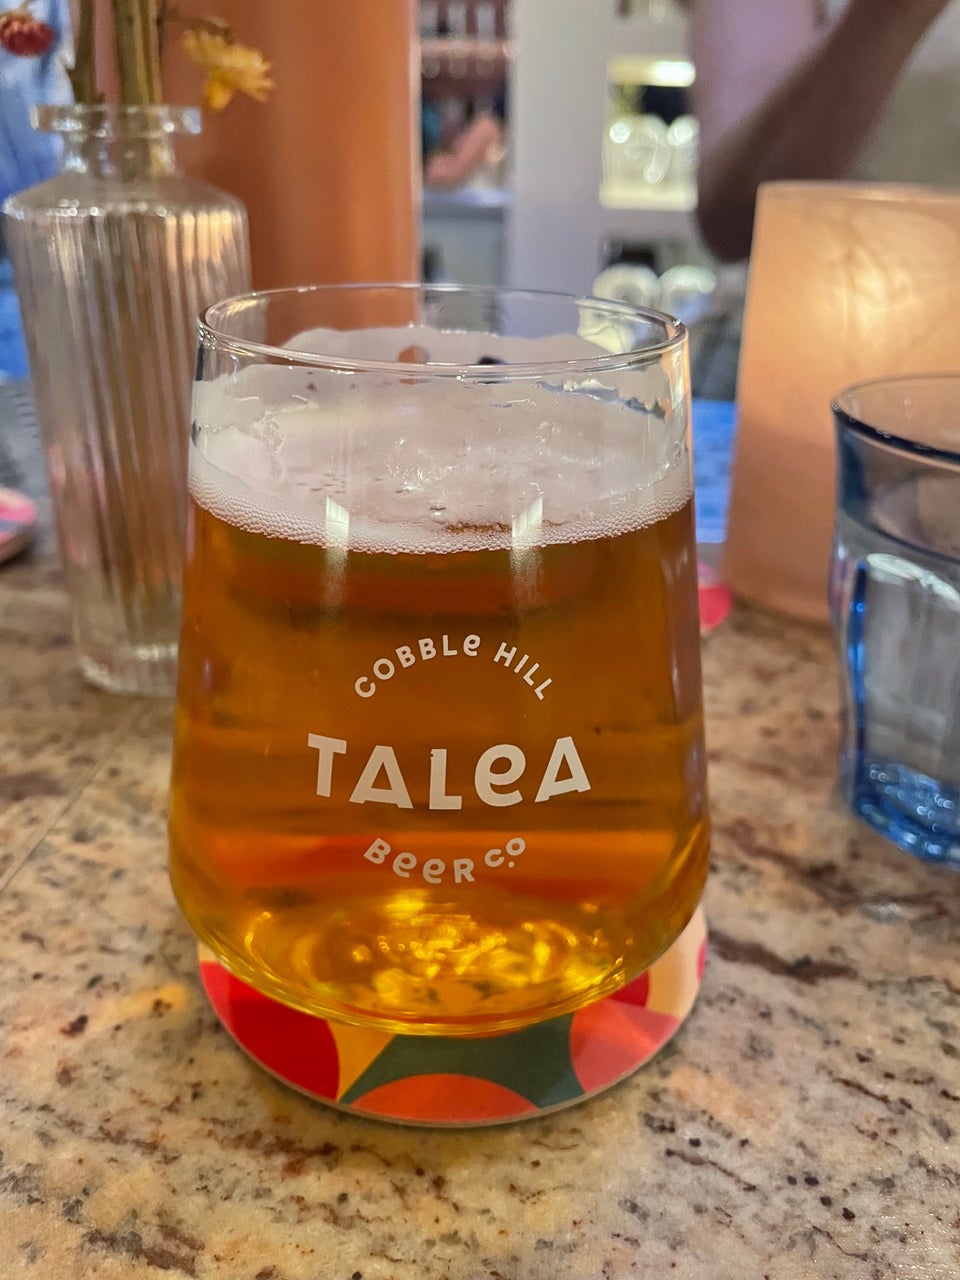 TALEA Beer Co. - Cobble Hill